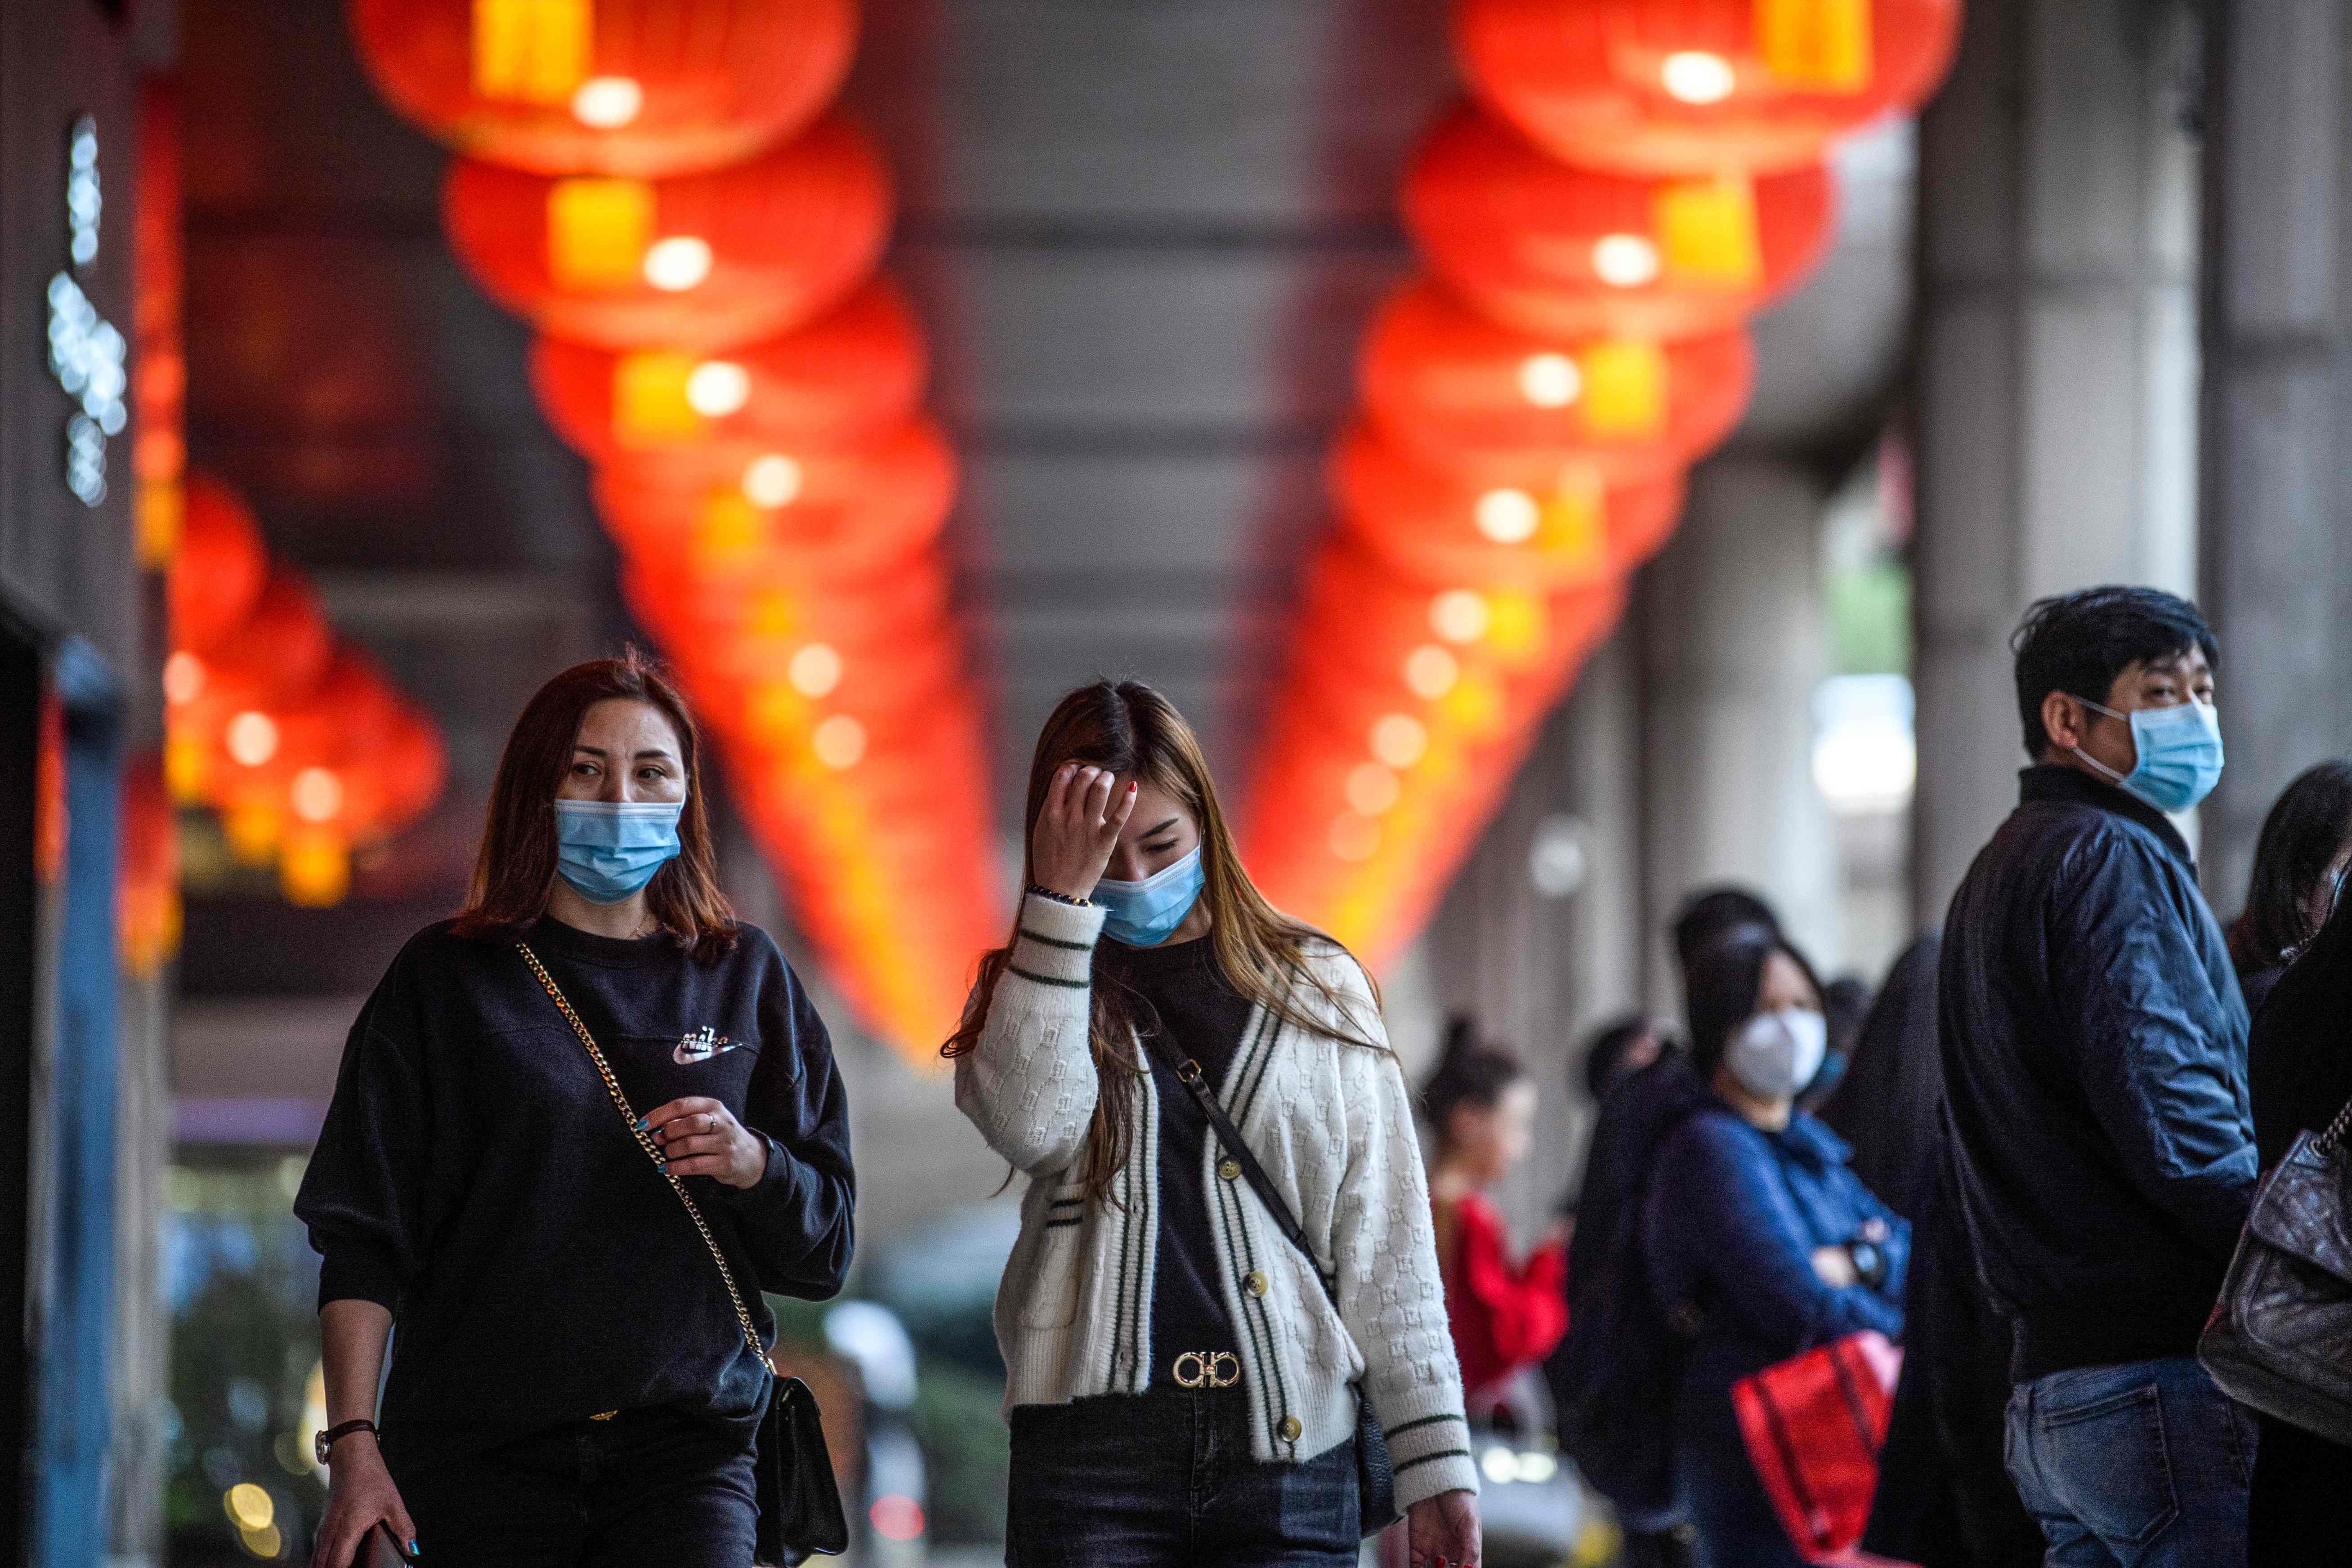 Peatones se protegen con mascarillas en Macao, China. (Foto Prensa Libre: AFP)